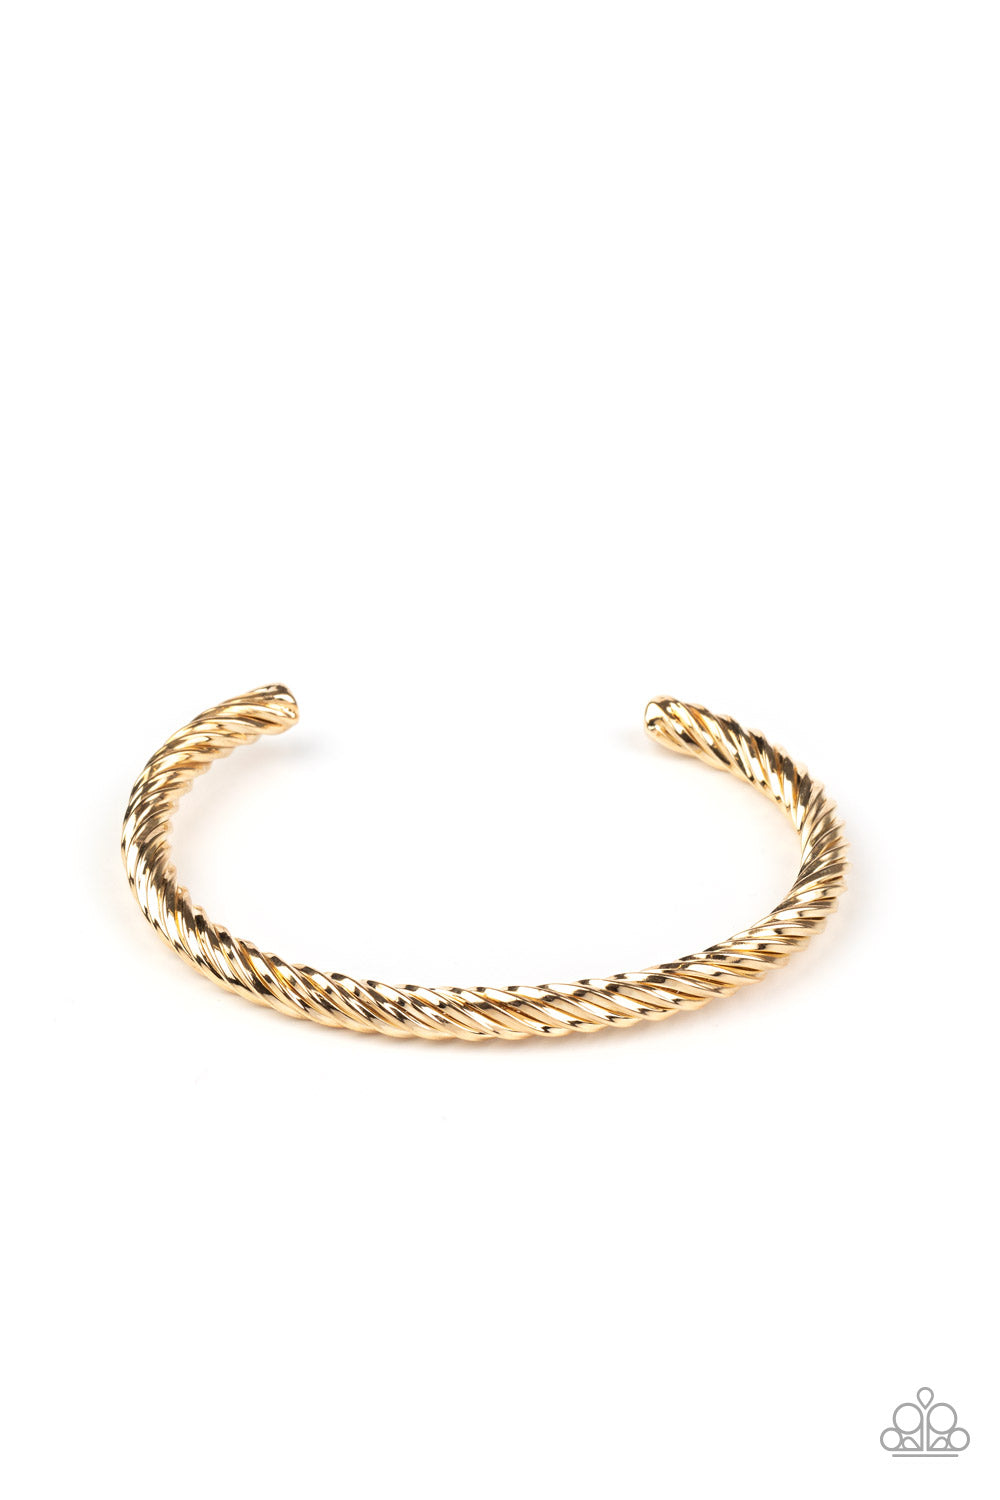 Far Out Wayfair - Green | Rope bracelet, Jewelry, Mens bracelet